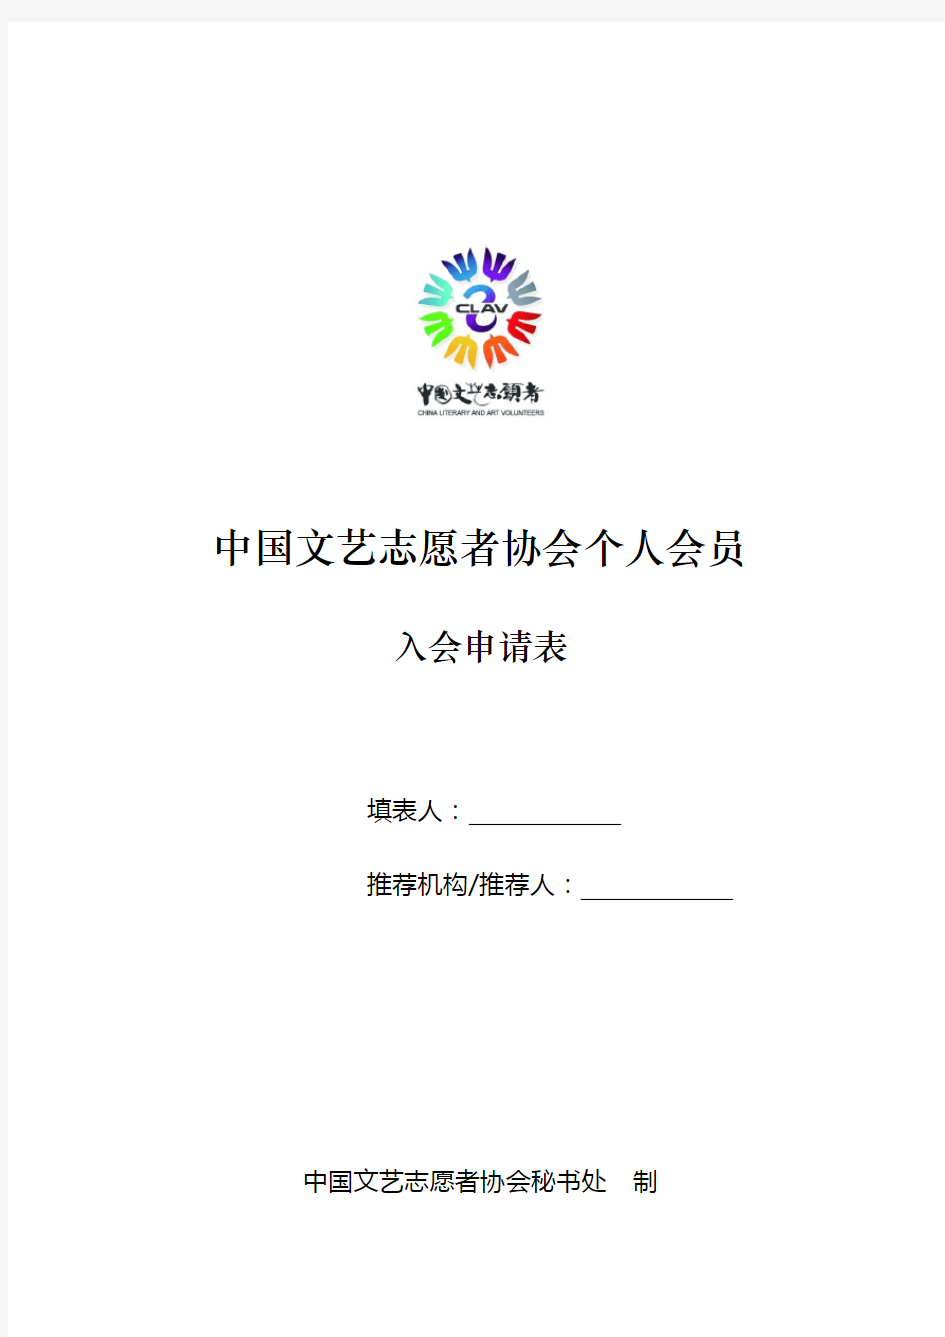 中国文艺志愿者协会个人会员入会申请表